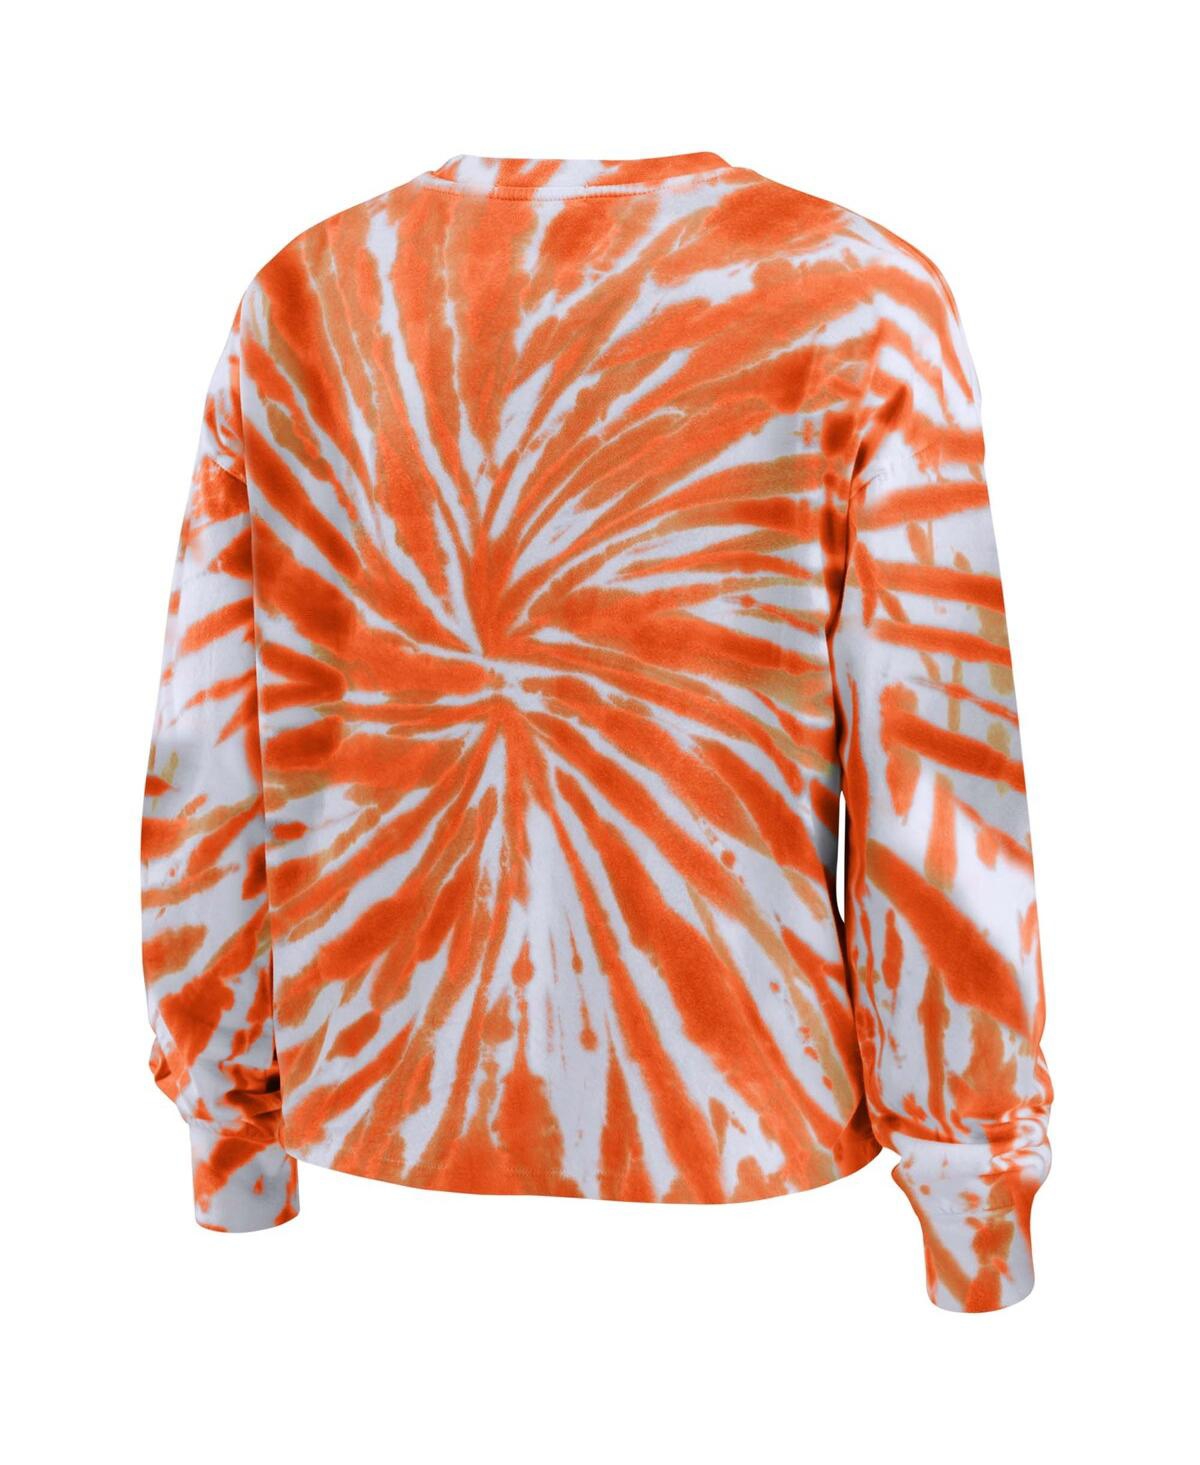 Shop Wear By Erin Andrews Women's  Orange Clemson Tigers Tie-dye Long Sleeve T-shirt